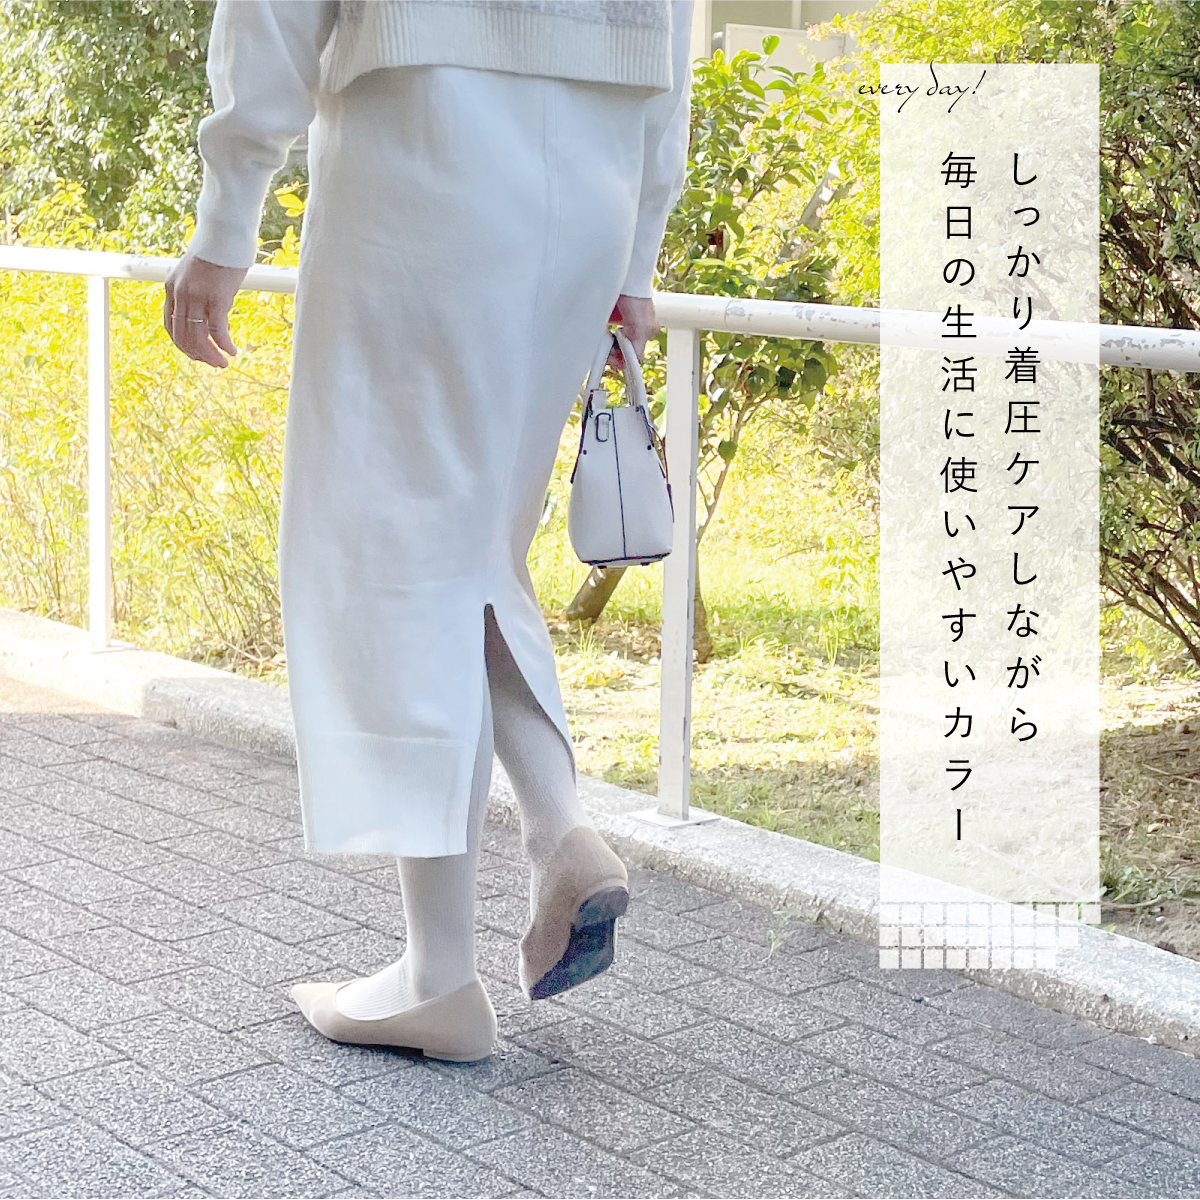 ( обновленный ) надеты давление носки надежно чуть более давление 22~25cm сделано в Японии мощный хлопок смешивание модель гольфы колени длина -ступенчатый надеты давление давление надеты ( почтовая отправка бесплатная доставка )